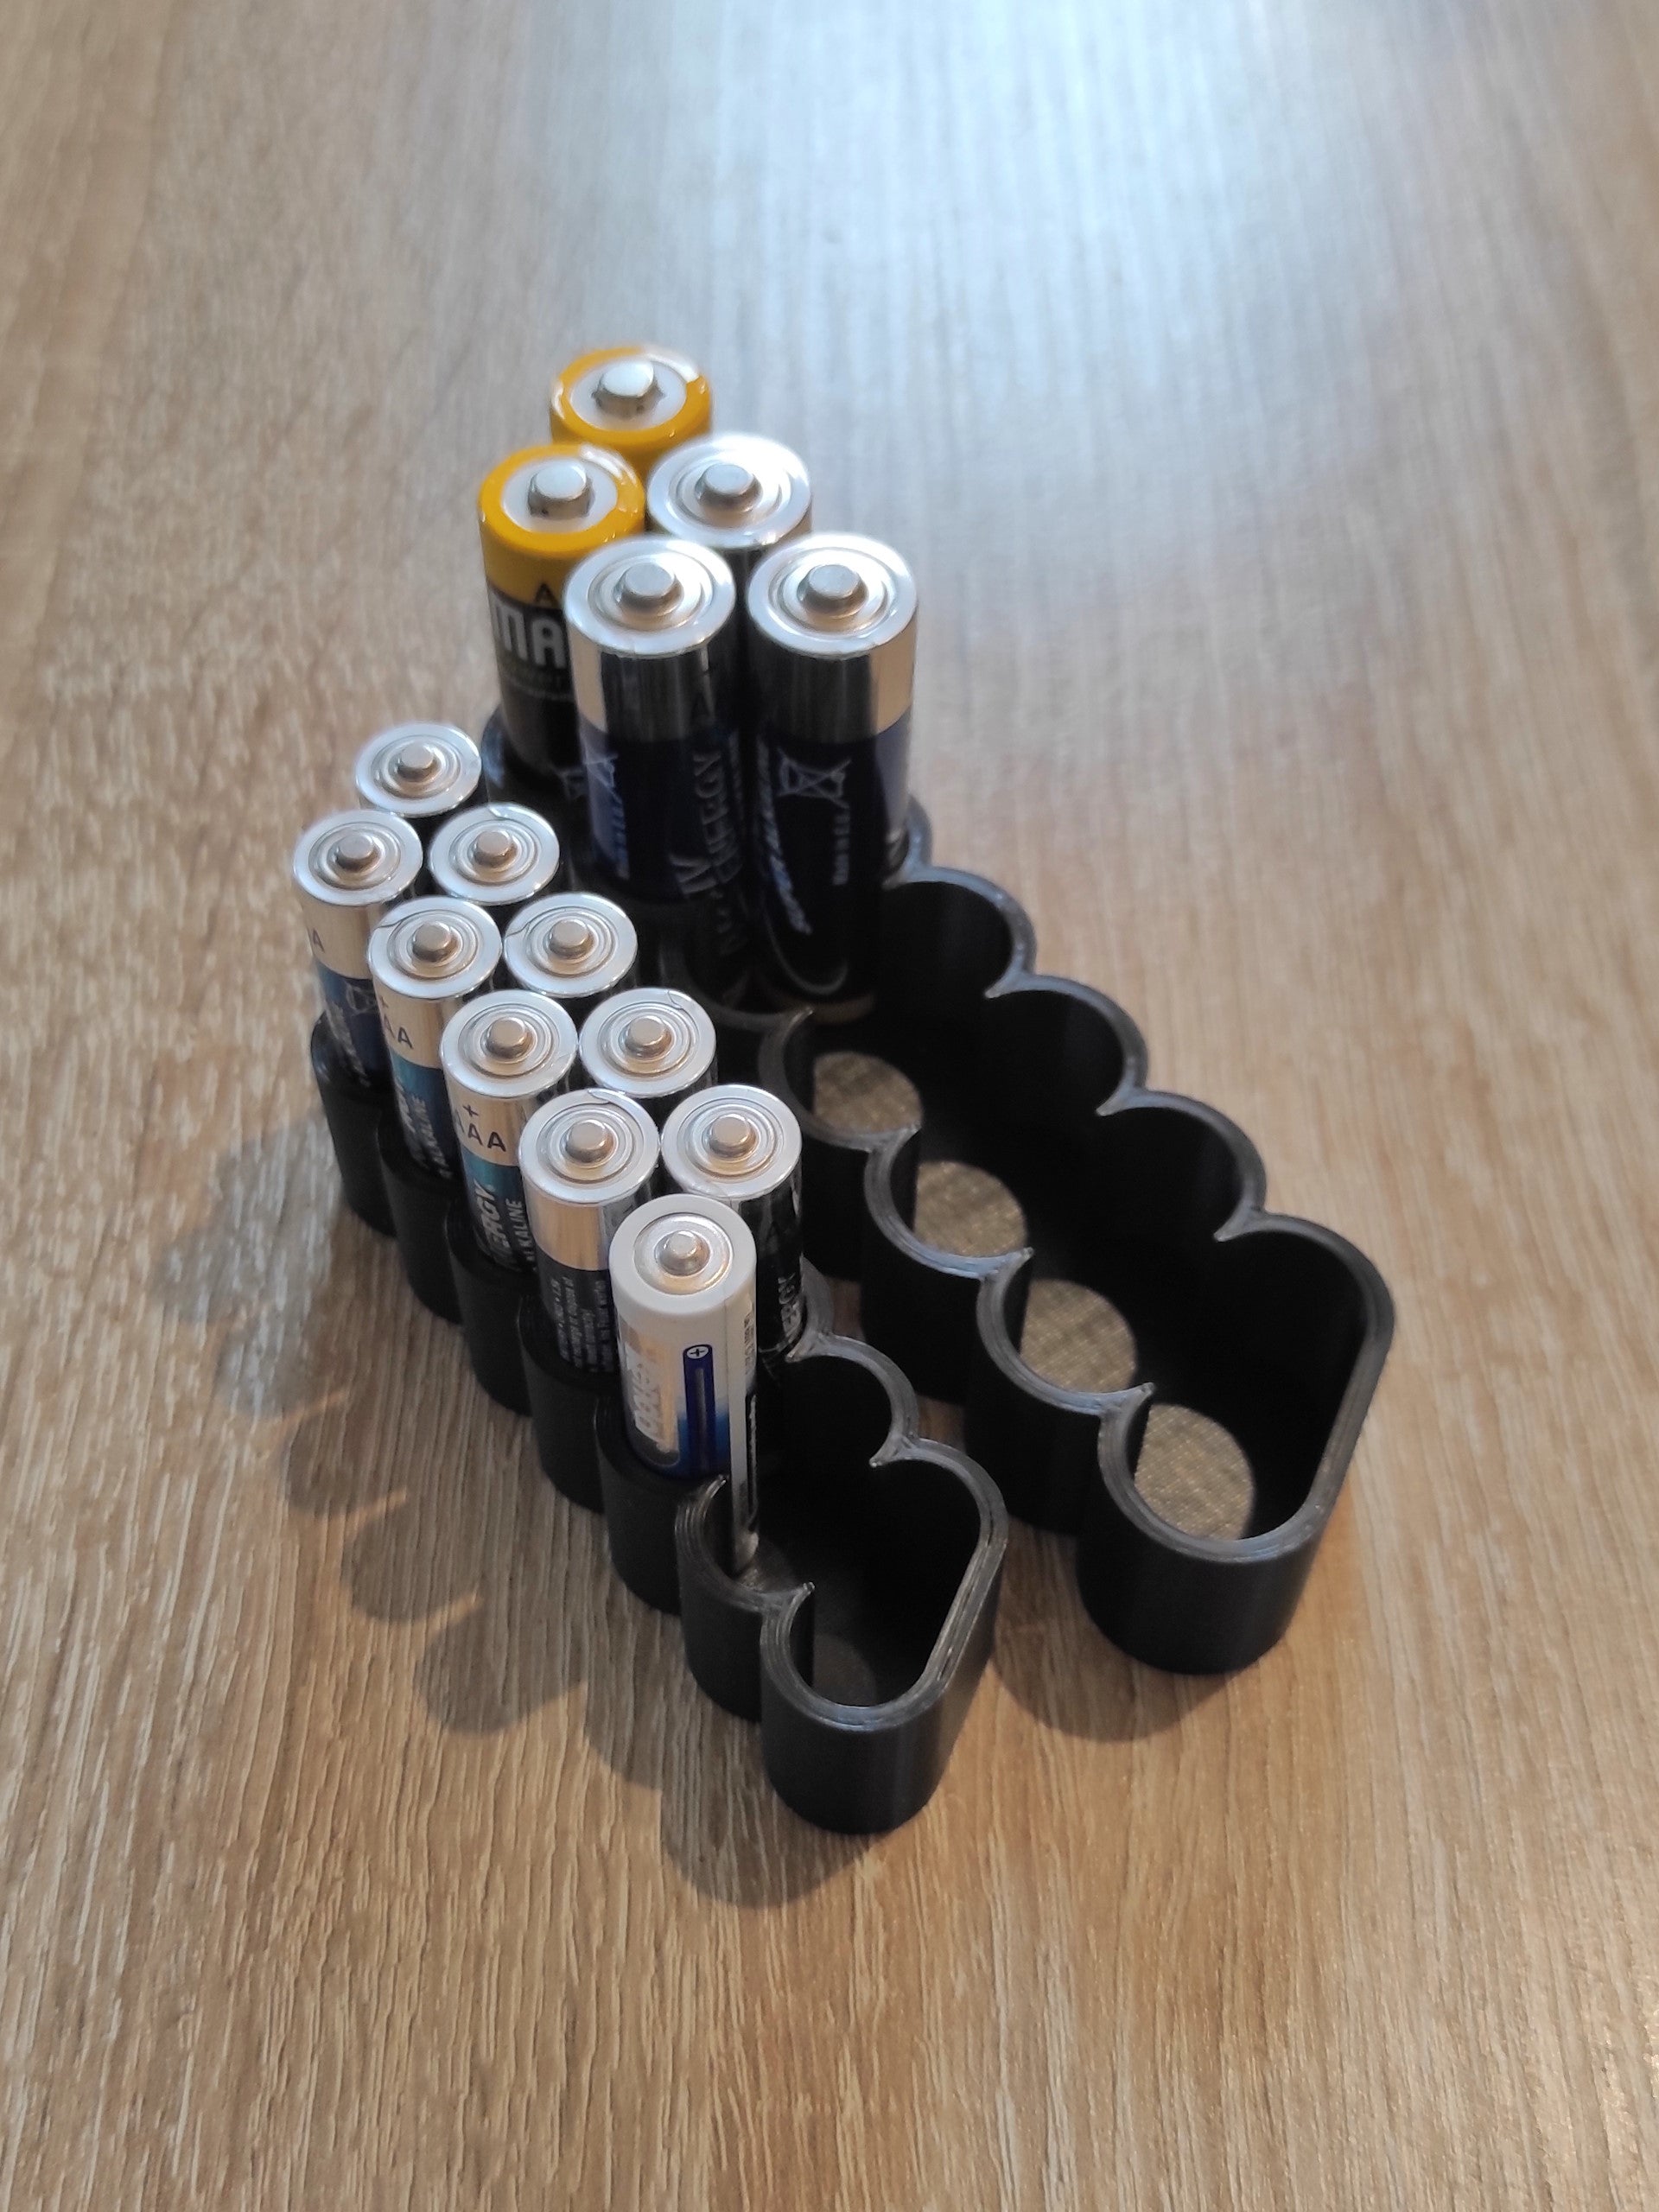 Batteriholder til AA og AAA batterier